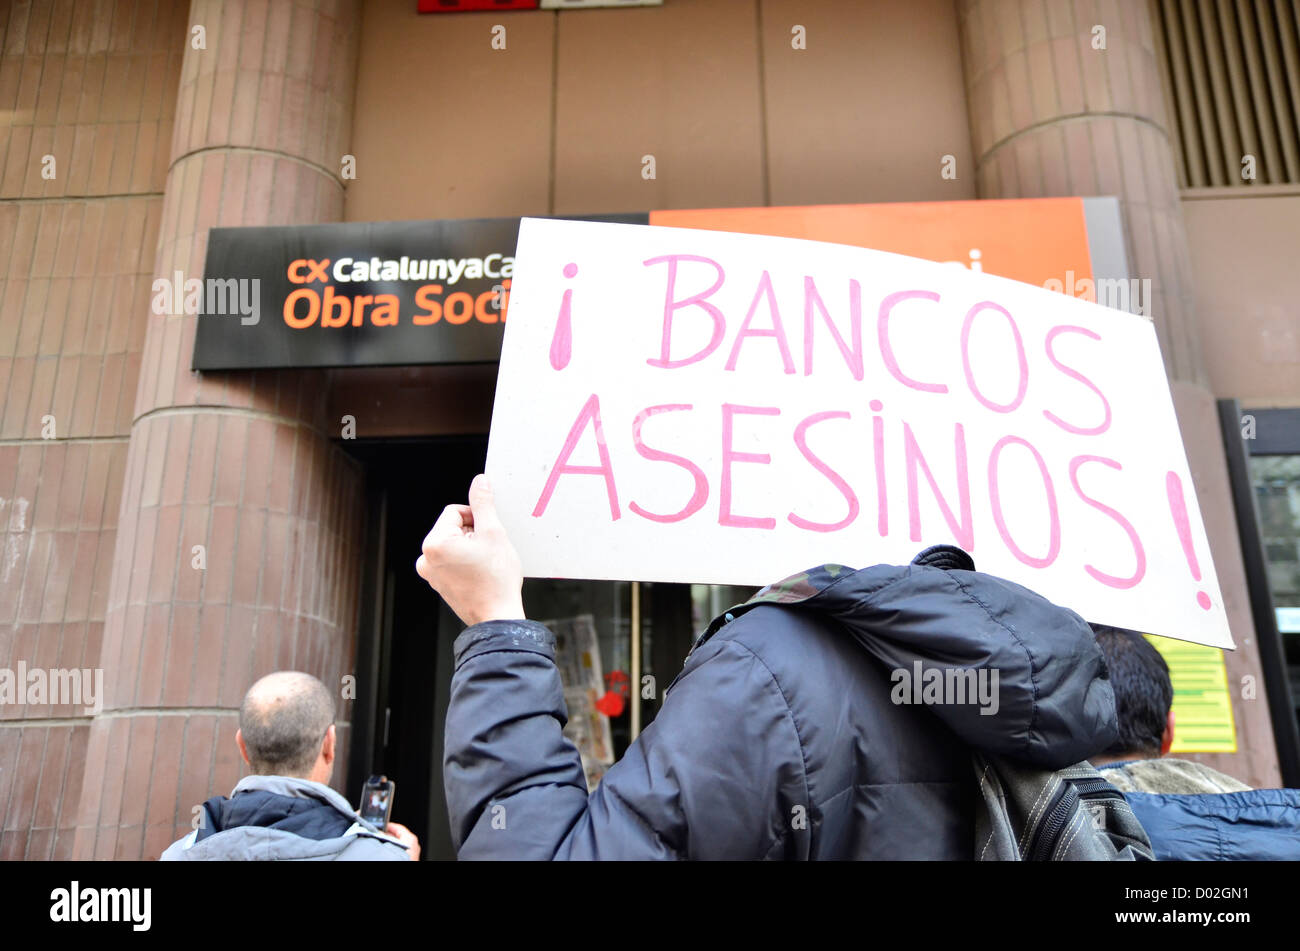 Manifestazioni & sciopero generale in L'Hospitalet de Llobregat (Barcelona). Banche assassini, dice il segno. Caixabank Foto Stock